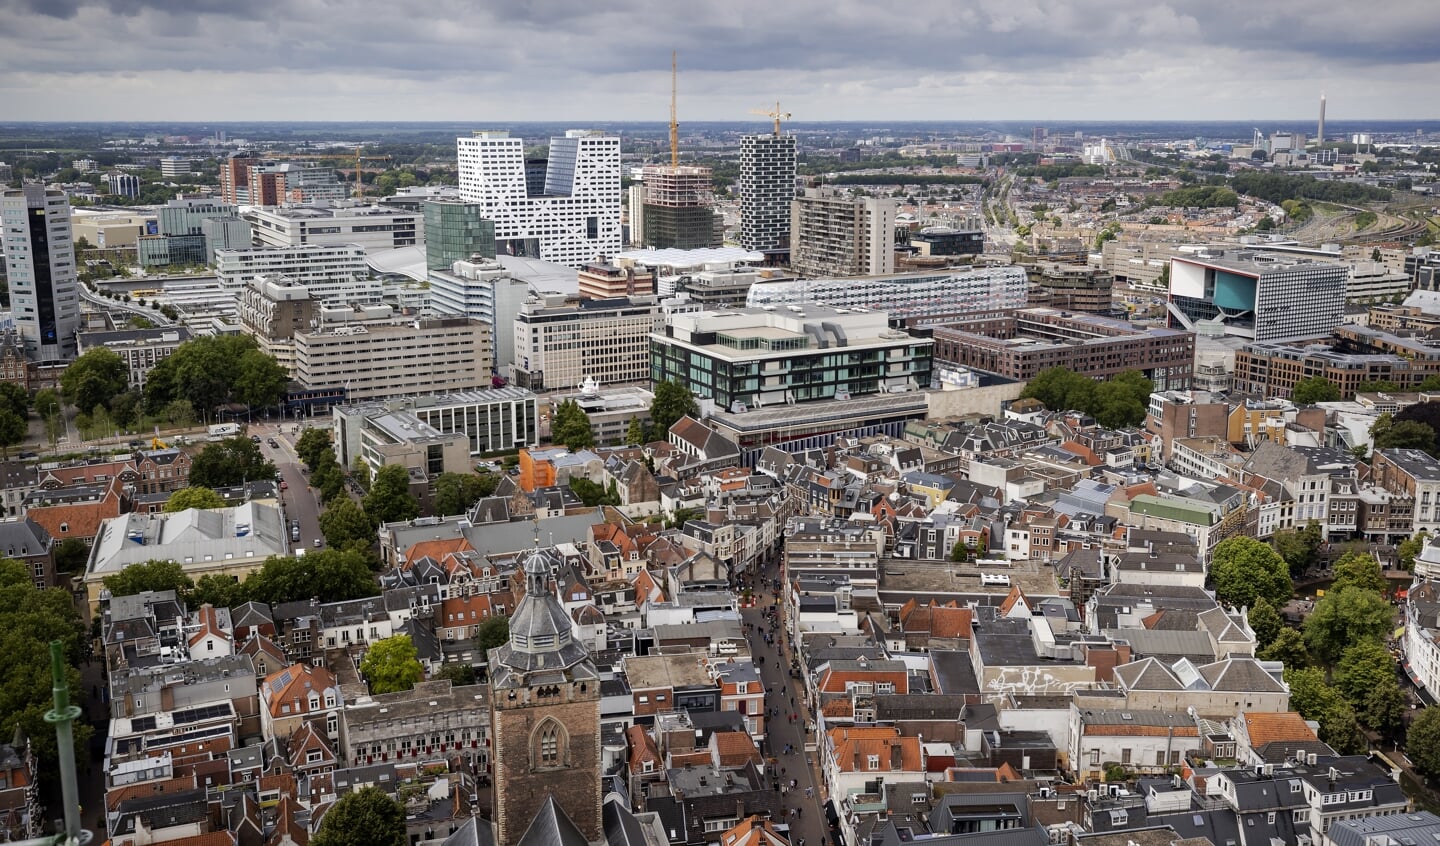 Elke gemeente is verplicht statushouders te huisvesten, maar door het grote tekort aan beschikbare en passende sociale huurwoningen loopt Utrecht flink achter op die taakstelling.